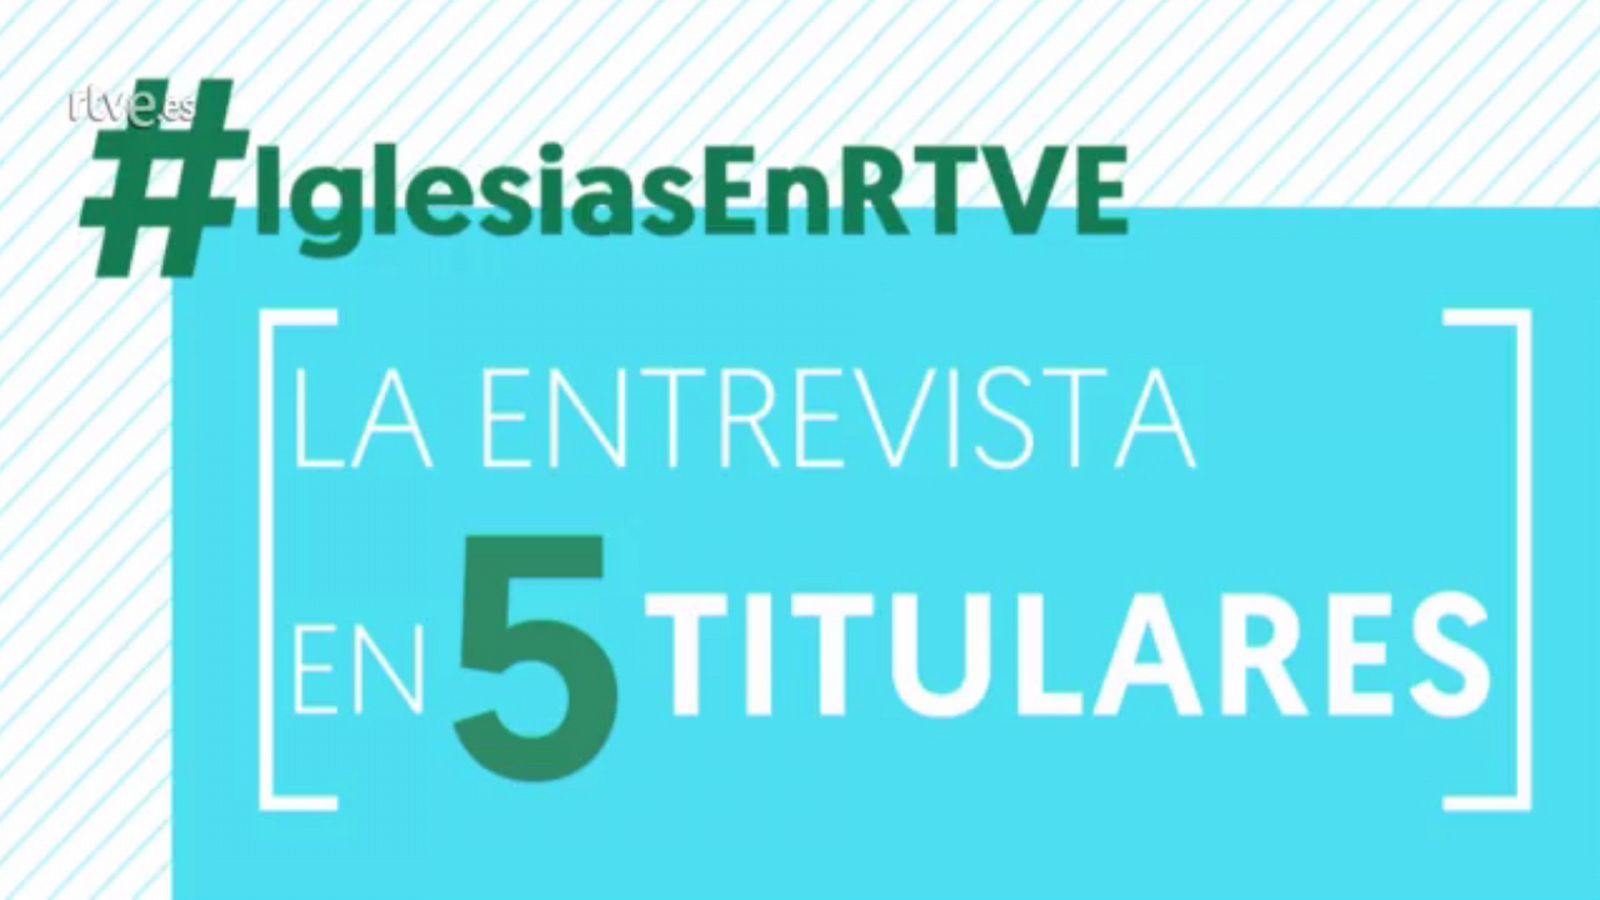 Vídeo: Cinco titulares de la entrevista a Pablo Iglesias en TVE